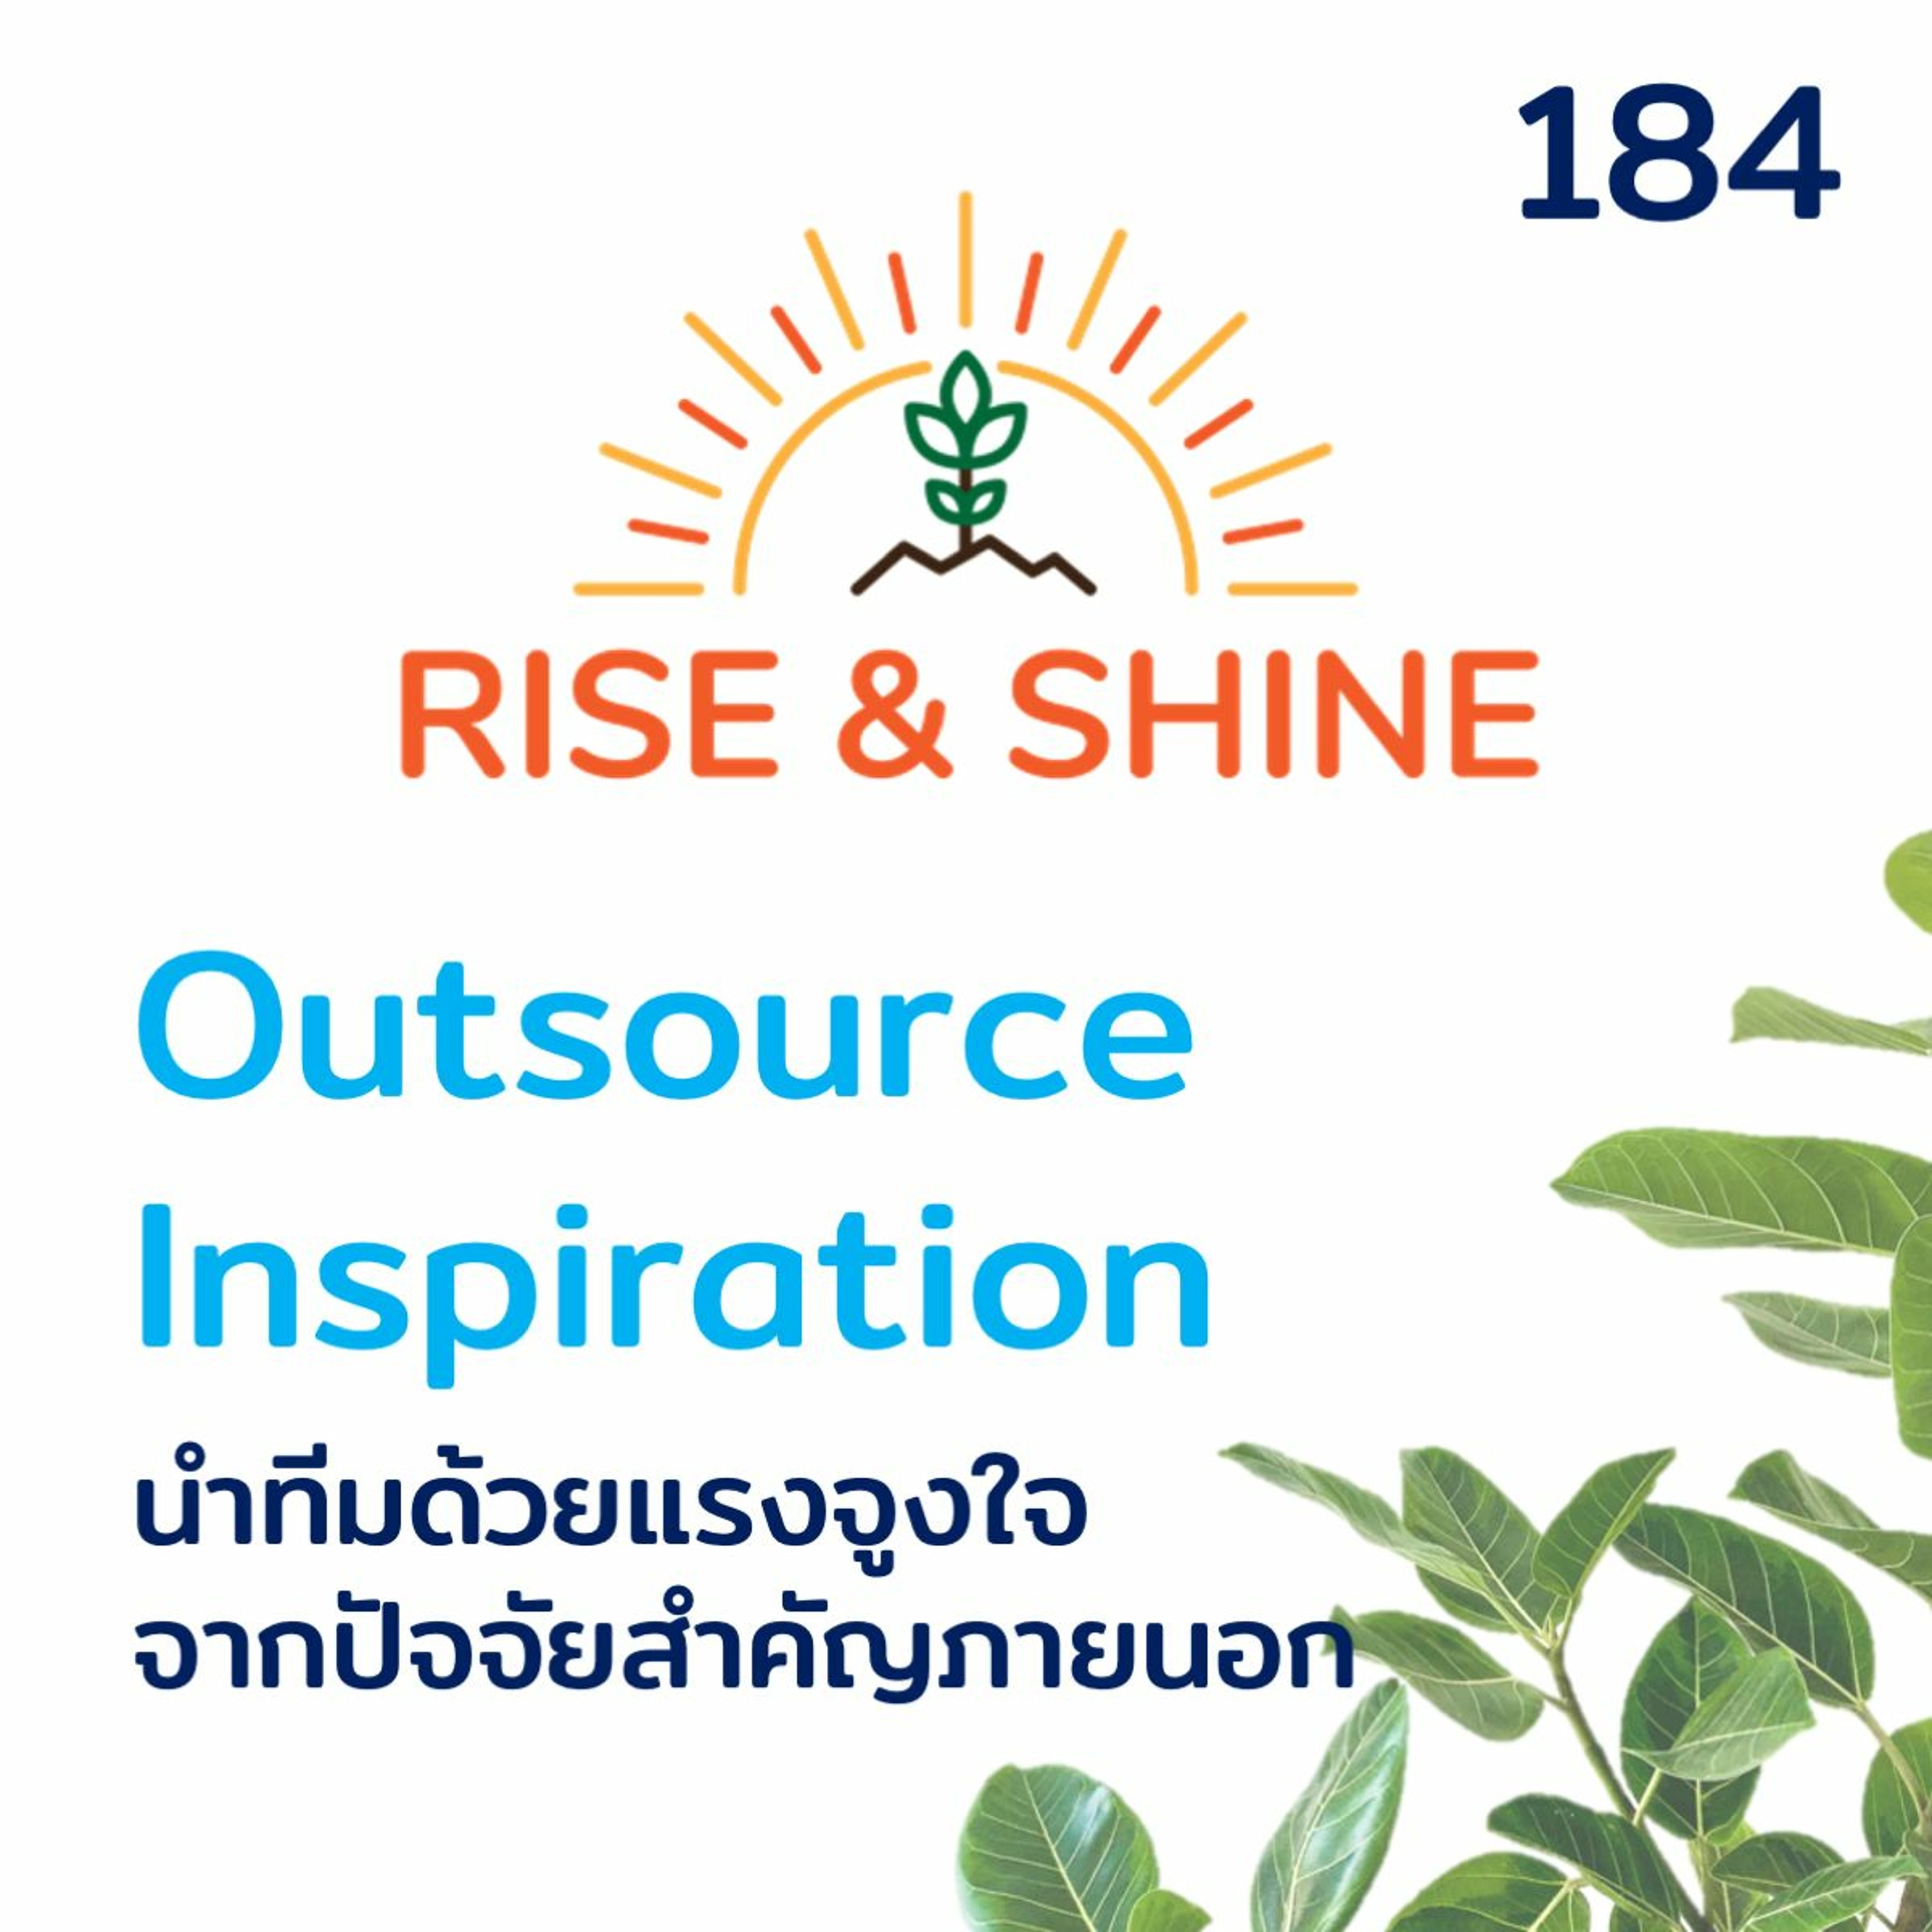 Rise & Shine 184 Outsource Inspiration นำทีมด้วยแรงจูงใจจากปัจจัยสำคัญภายนอก